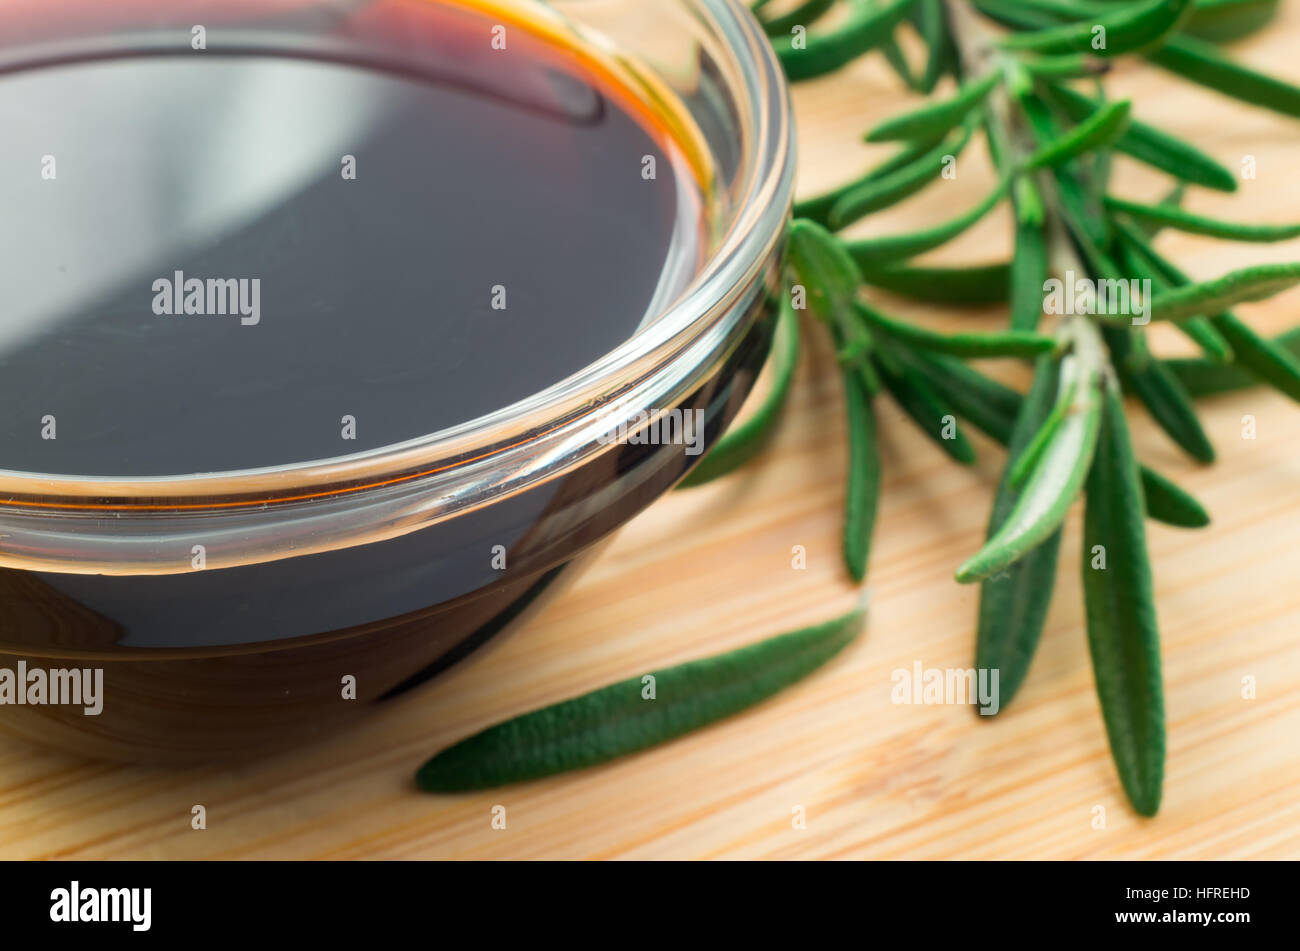 Desenfoque de imagen borrosa y la salsa de soja en un vaso y una ramita de romero sobre una plancha de madera desc Foto de stock